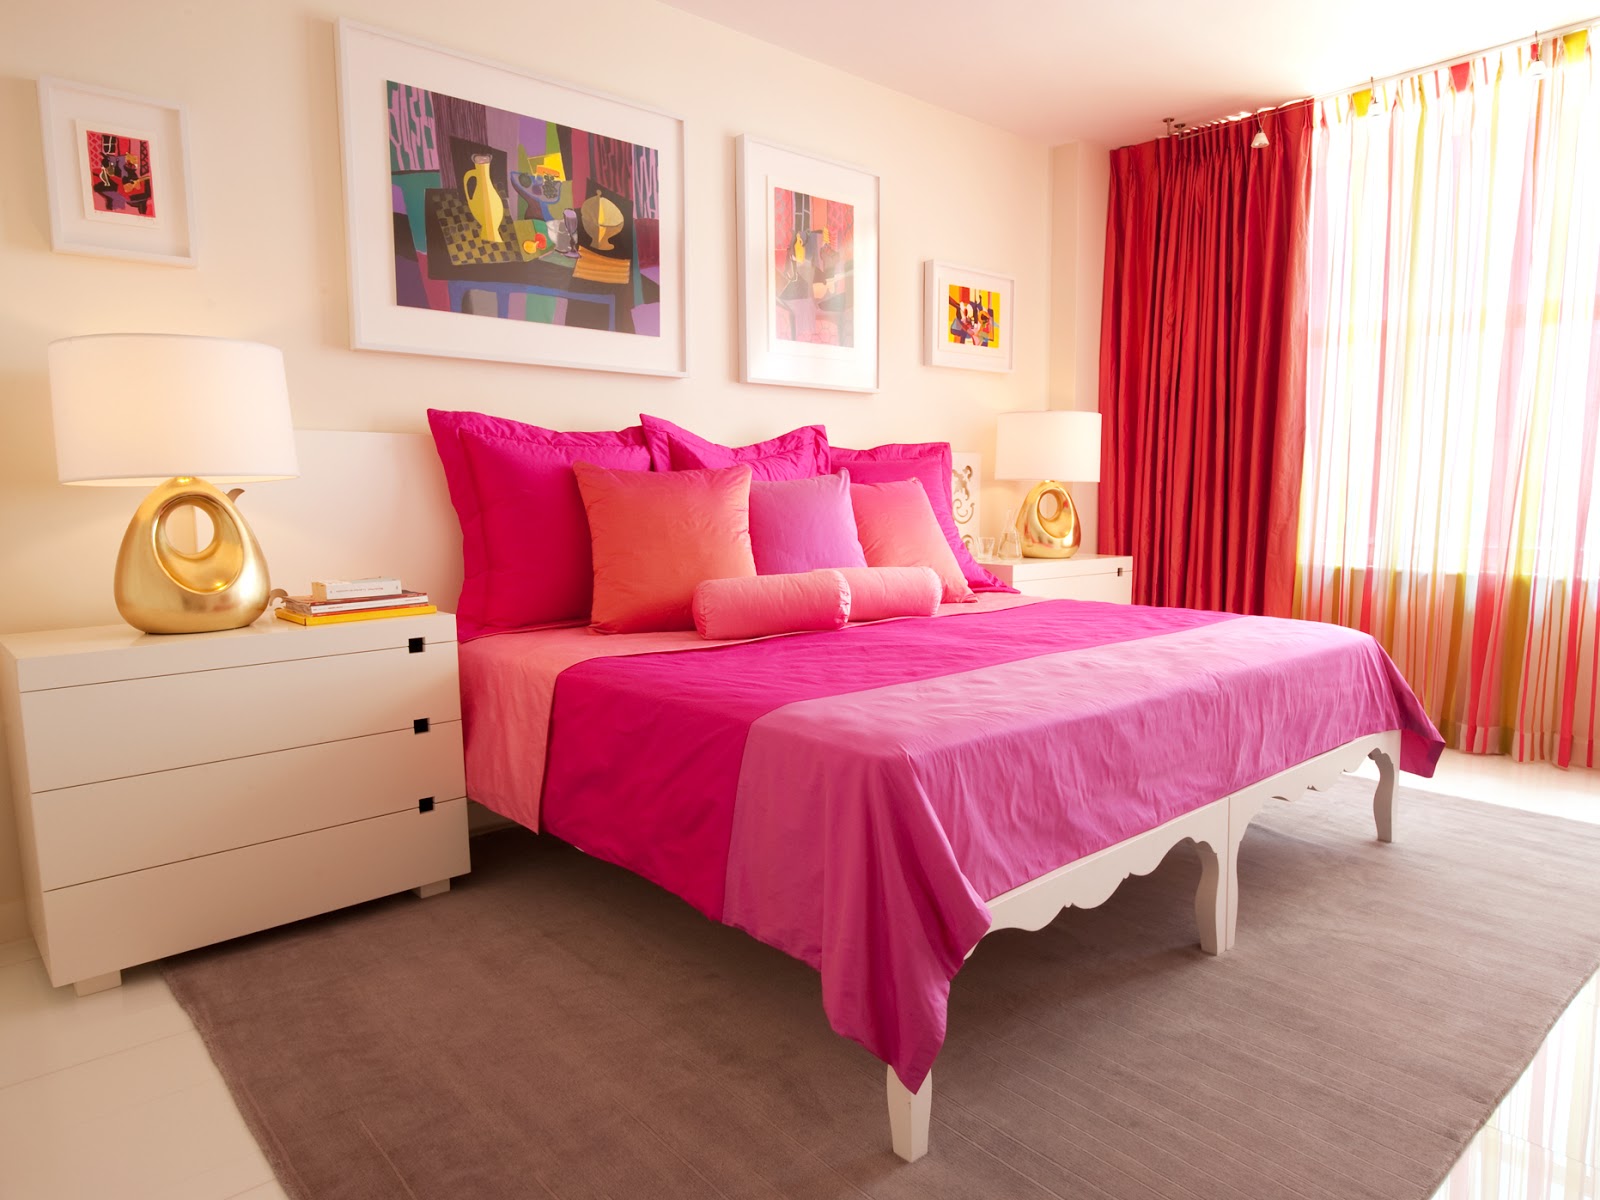 60 Desain Interior Kamar Tidur Warna Pink Untuk Perempuan